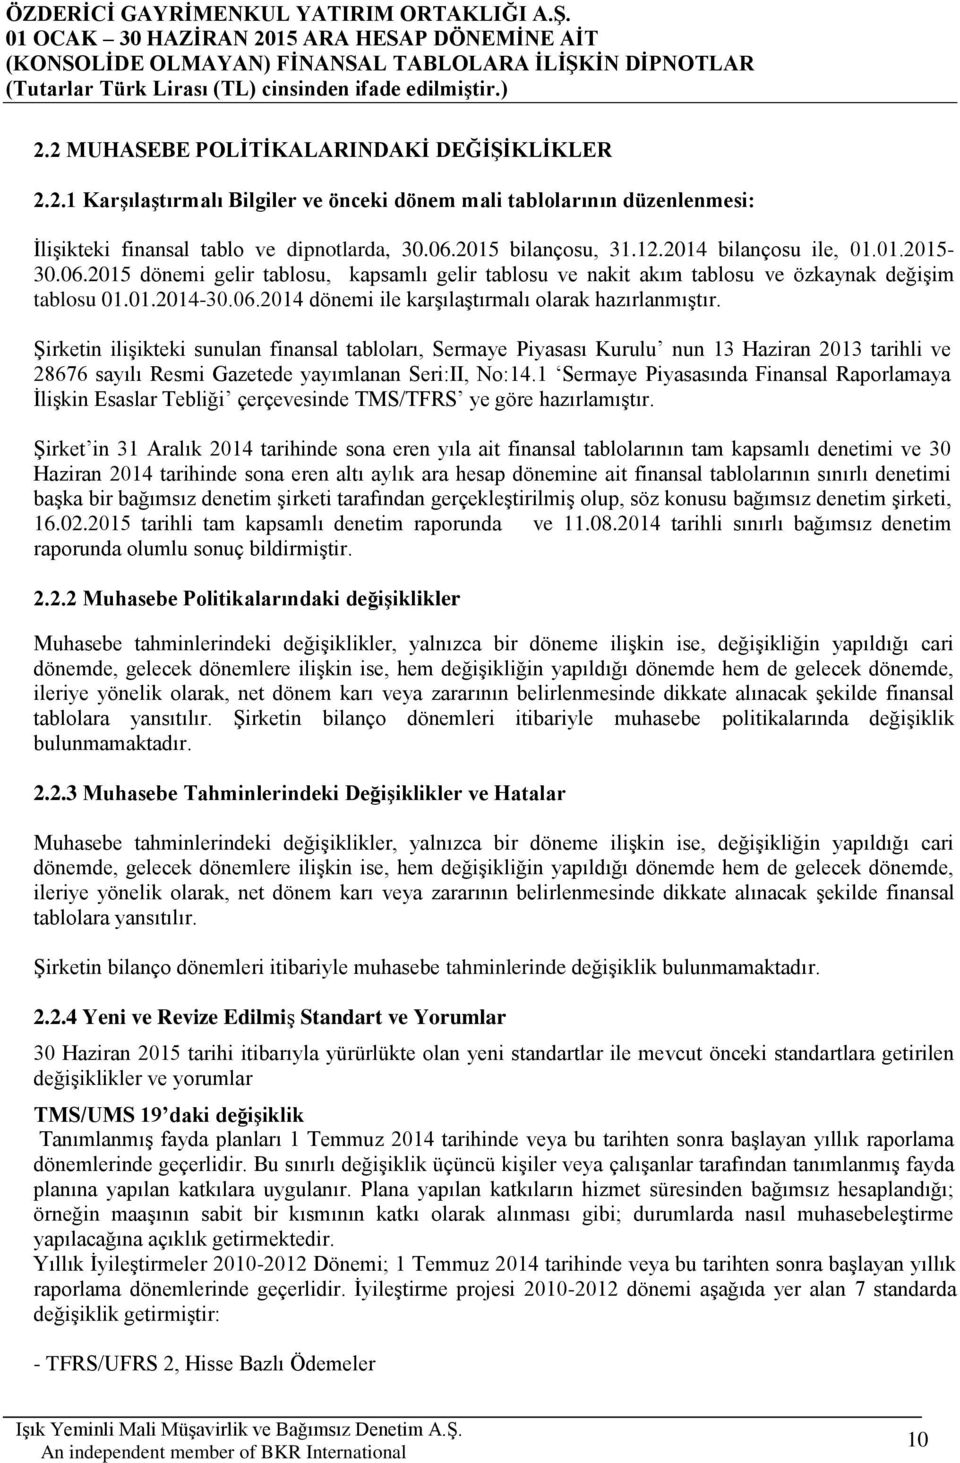 Şirketin ilişikteki sunulan finansal tabloları, Sermaye Piyasası Kurulu nun 13 Haziran 2013 tarihli ve 28676 sayılı Resmi Gazetede yayımlanan Seri:II, No:14.